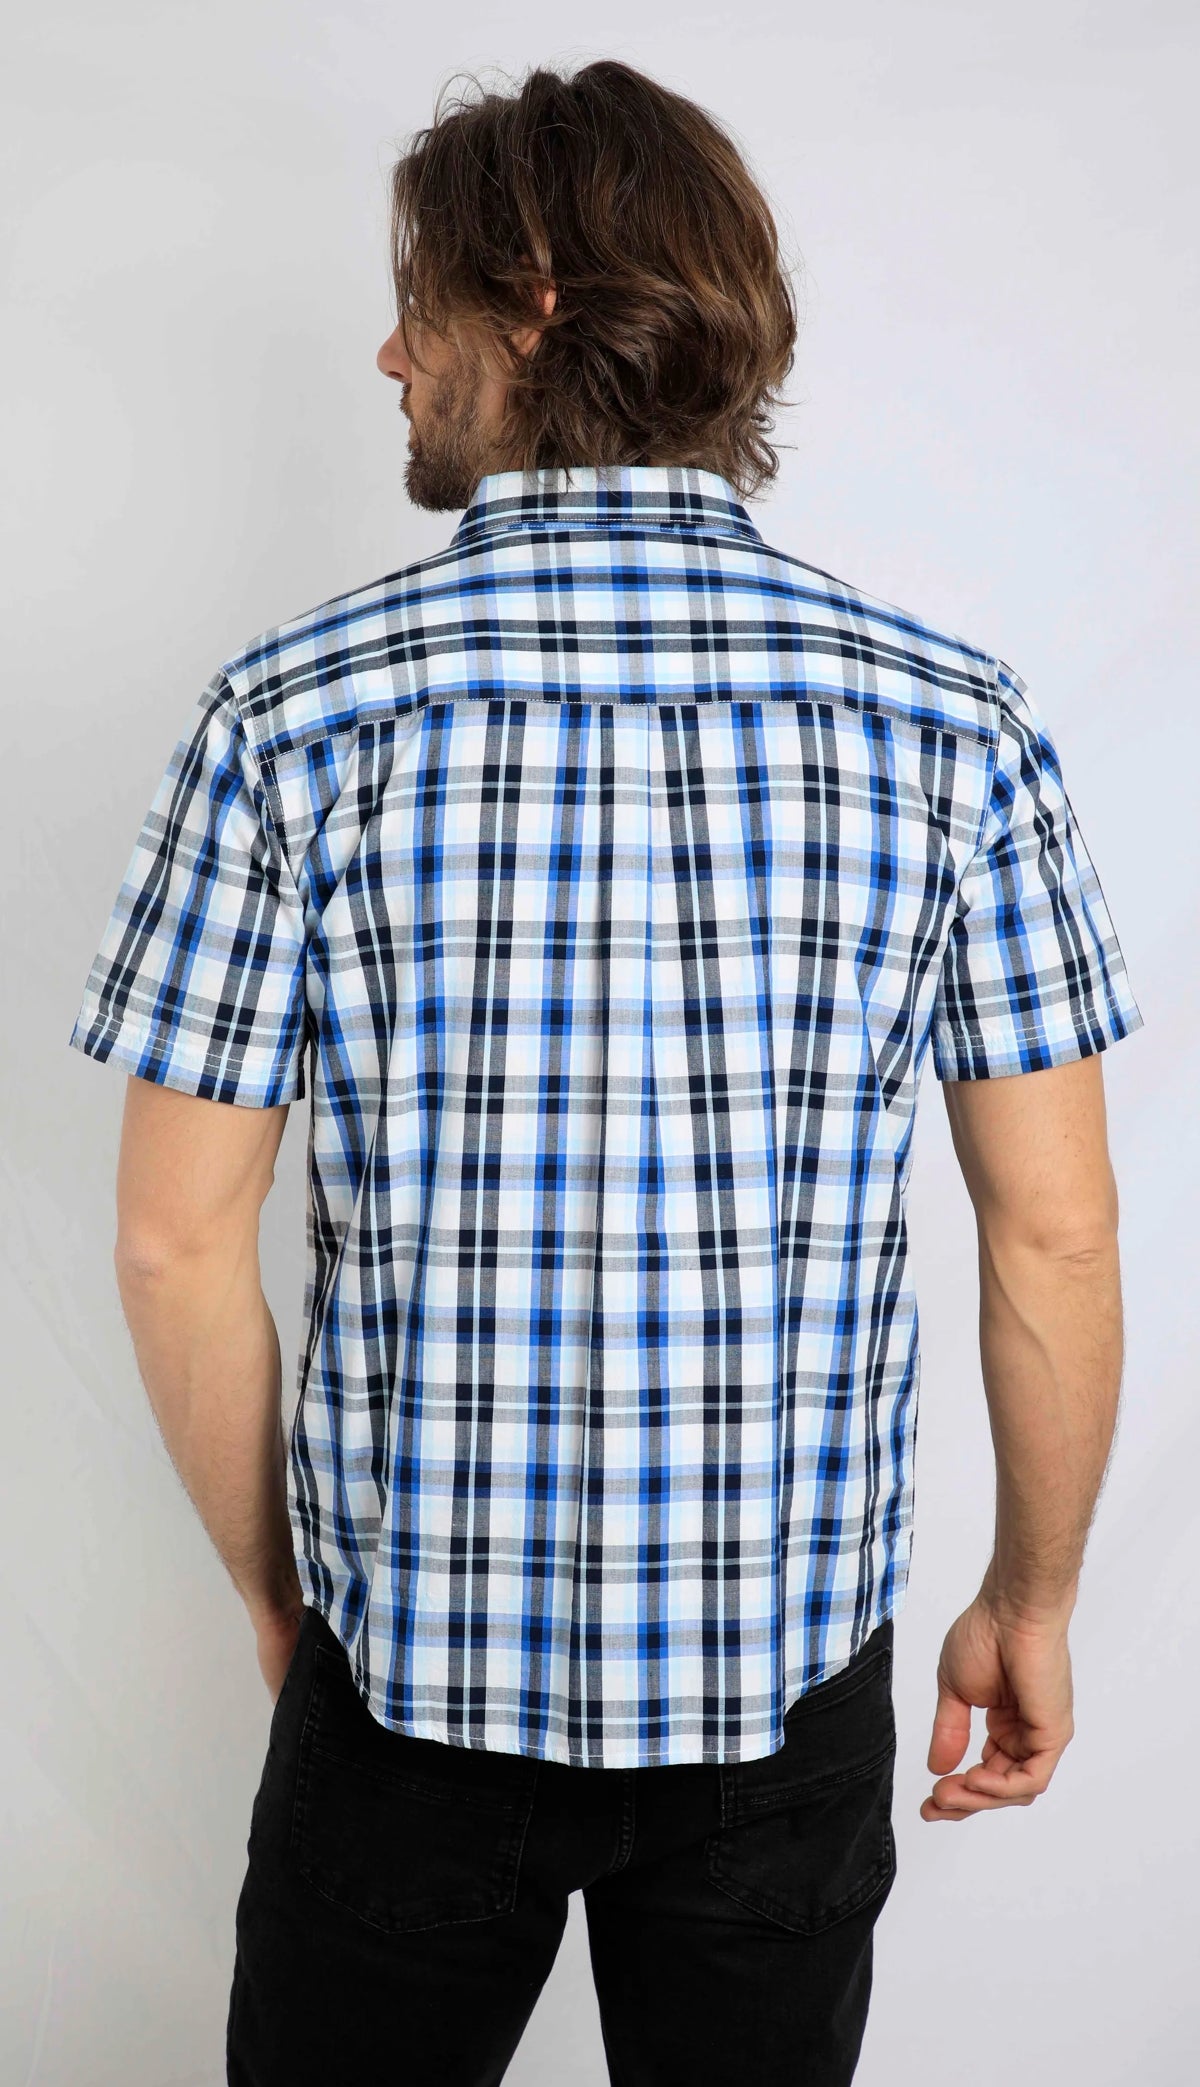 A men's short sleeve check pattern Judd shirt from Weird Fish in Blue Surf.